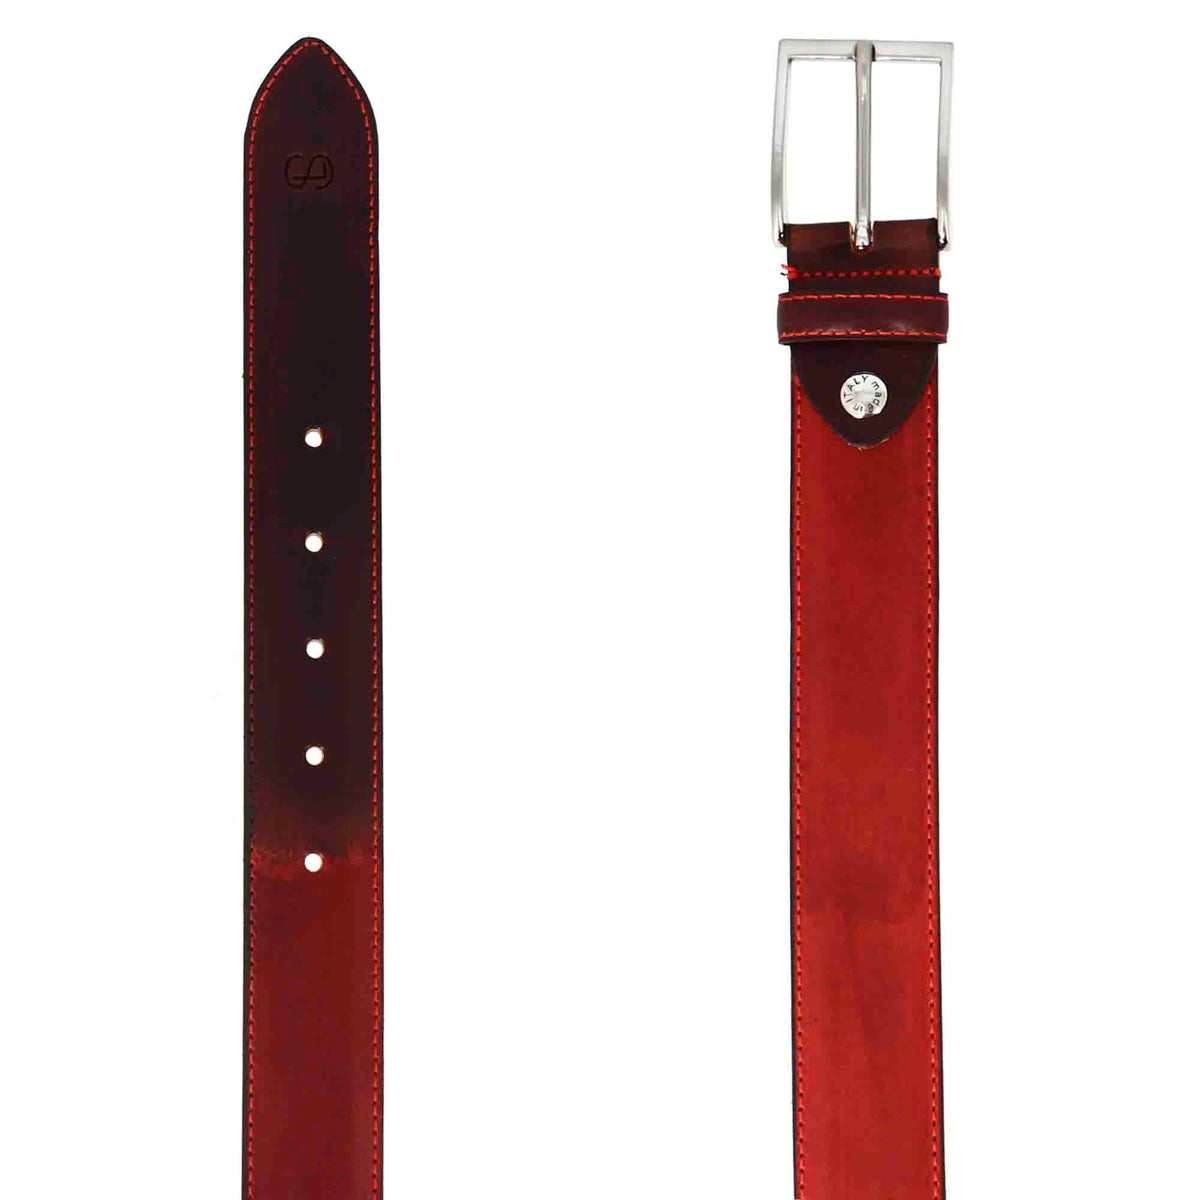 Cintura da uomo elegante in pelle pieno fiore colorata a mano marrone scuro e rosso